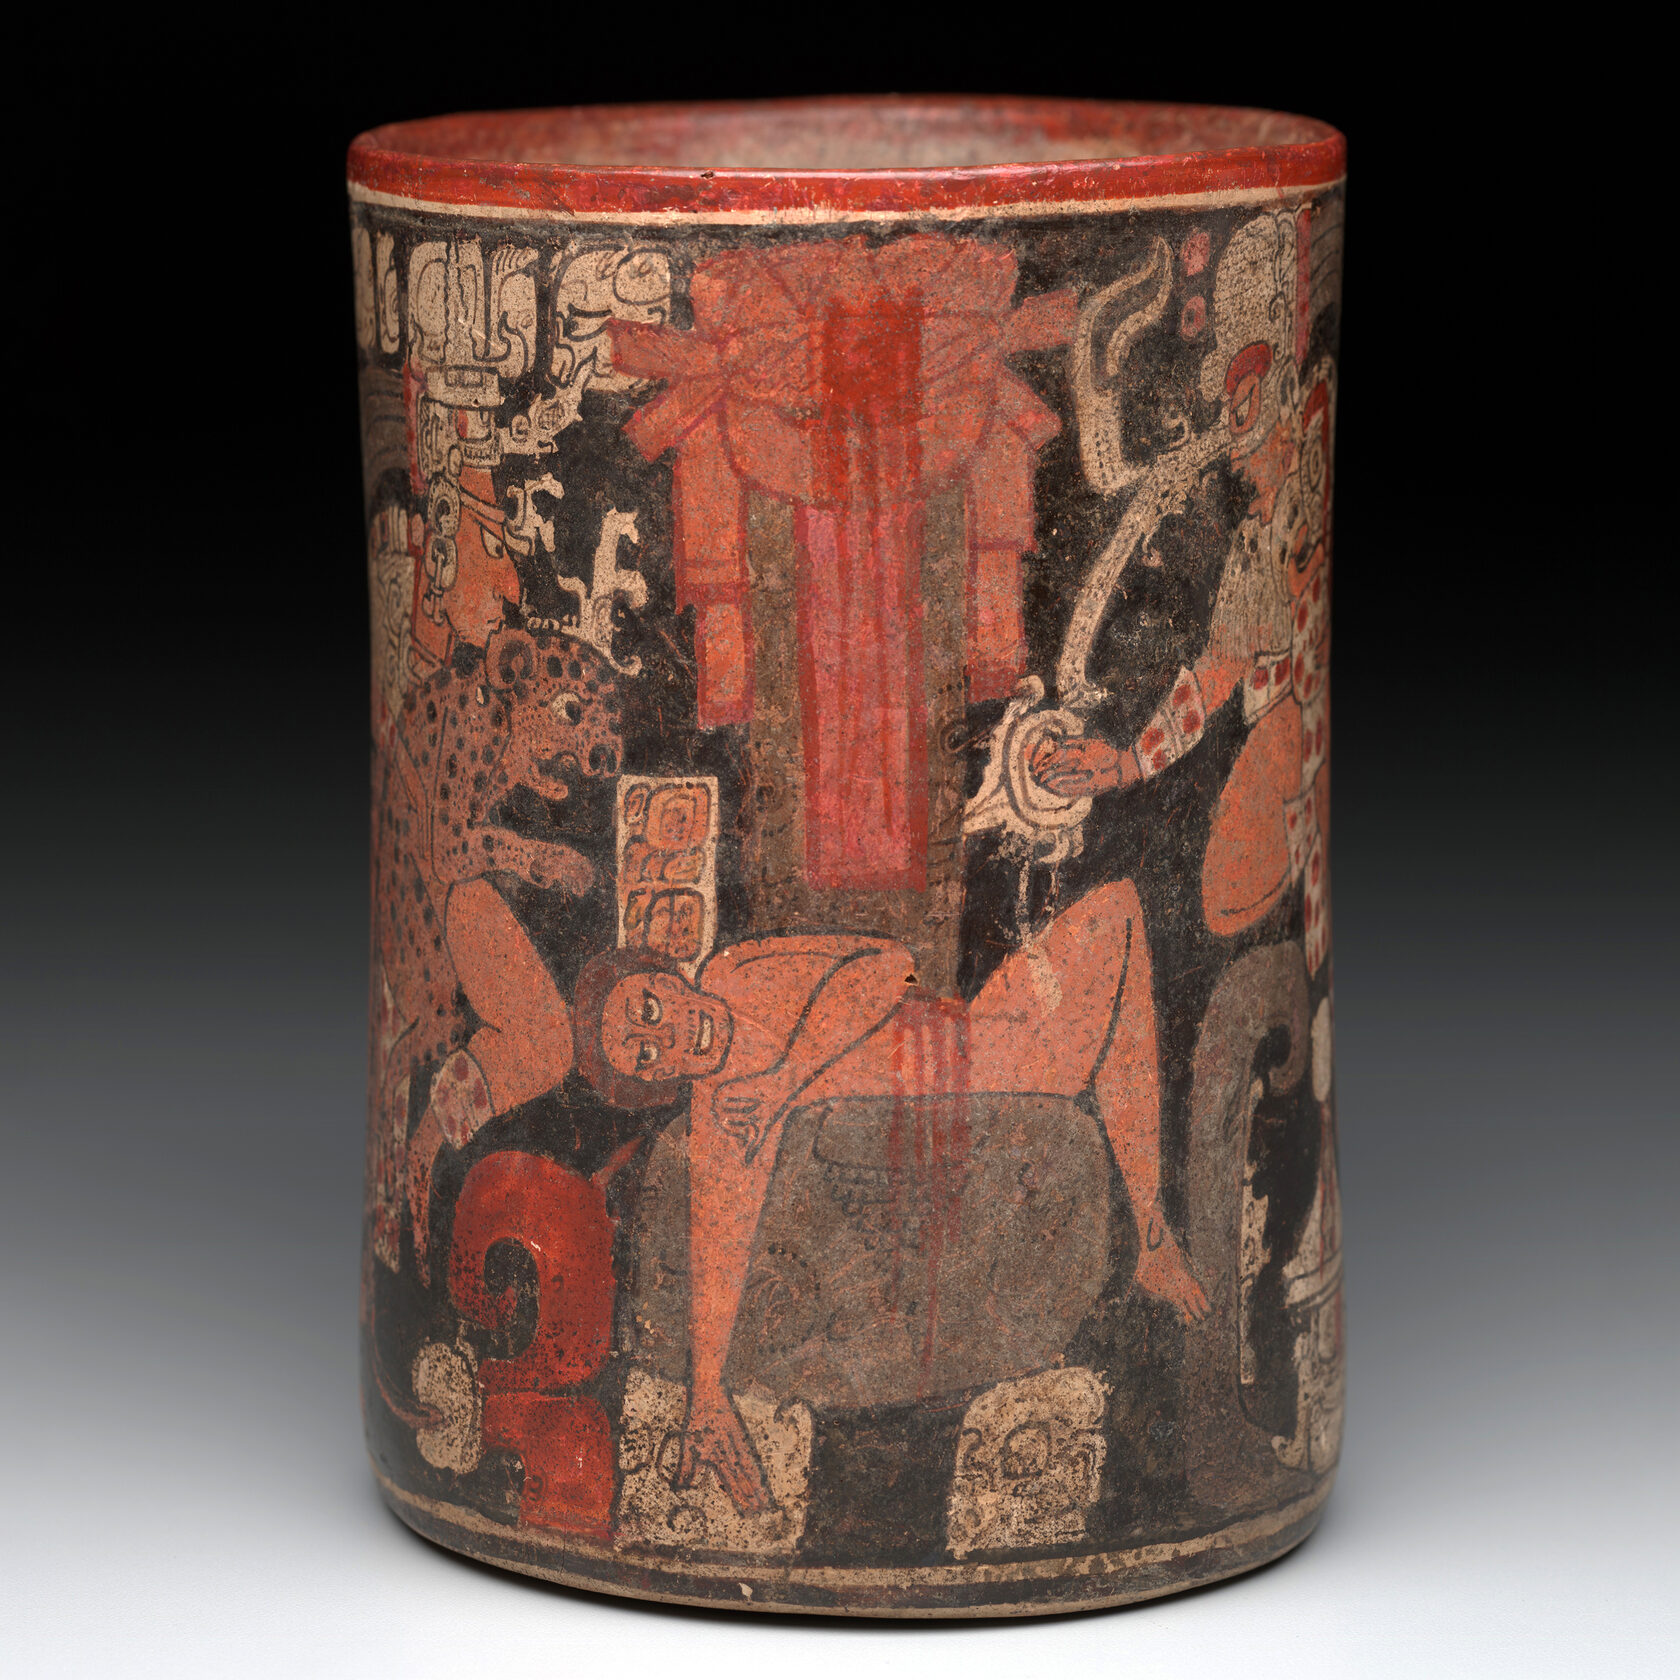 Сосуд со сценой жертвоприношения. Майя, 600-900 гг. н.э. Коллекция Dallas Museum of Art.